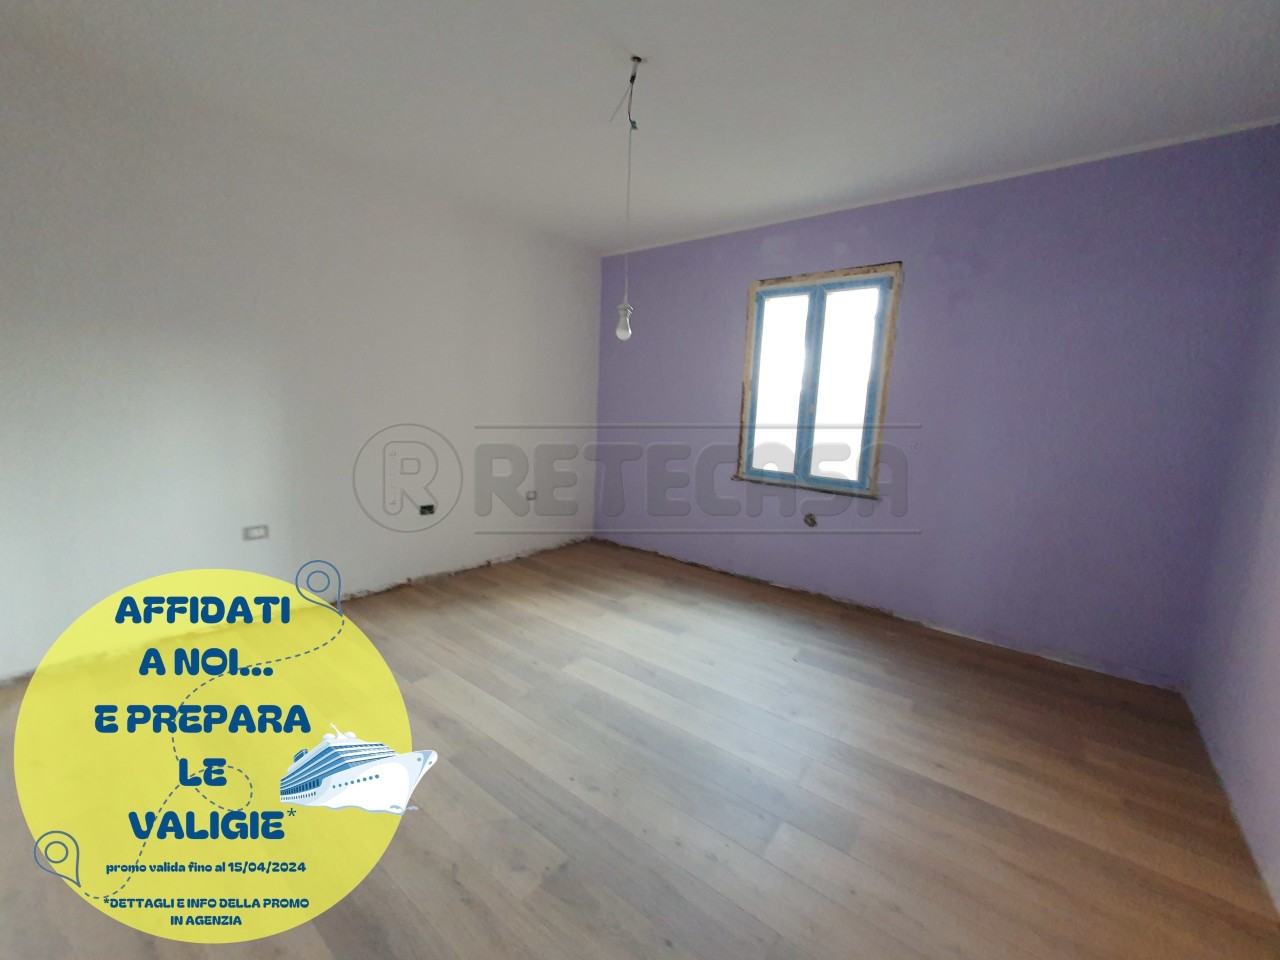 Appartamento in vendita a Castelvetro Piacentino, 4 locali, prezzo € 39.900 | PortaleAgenzieImmobiliari.it